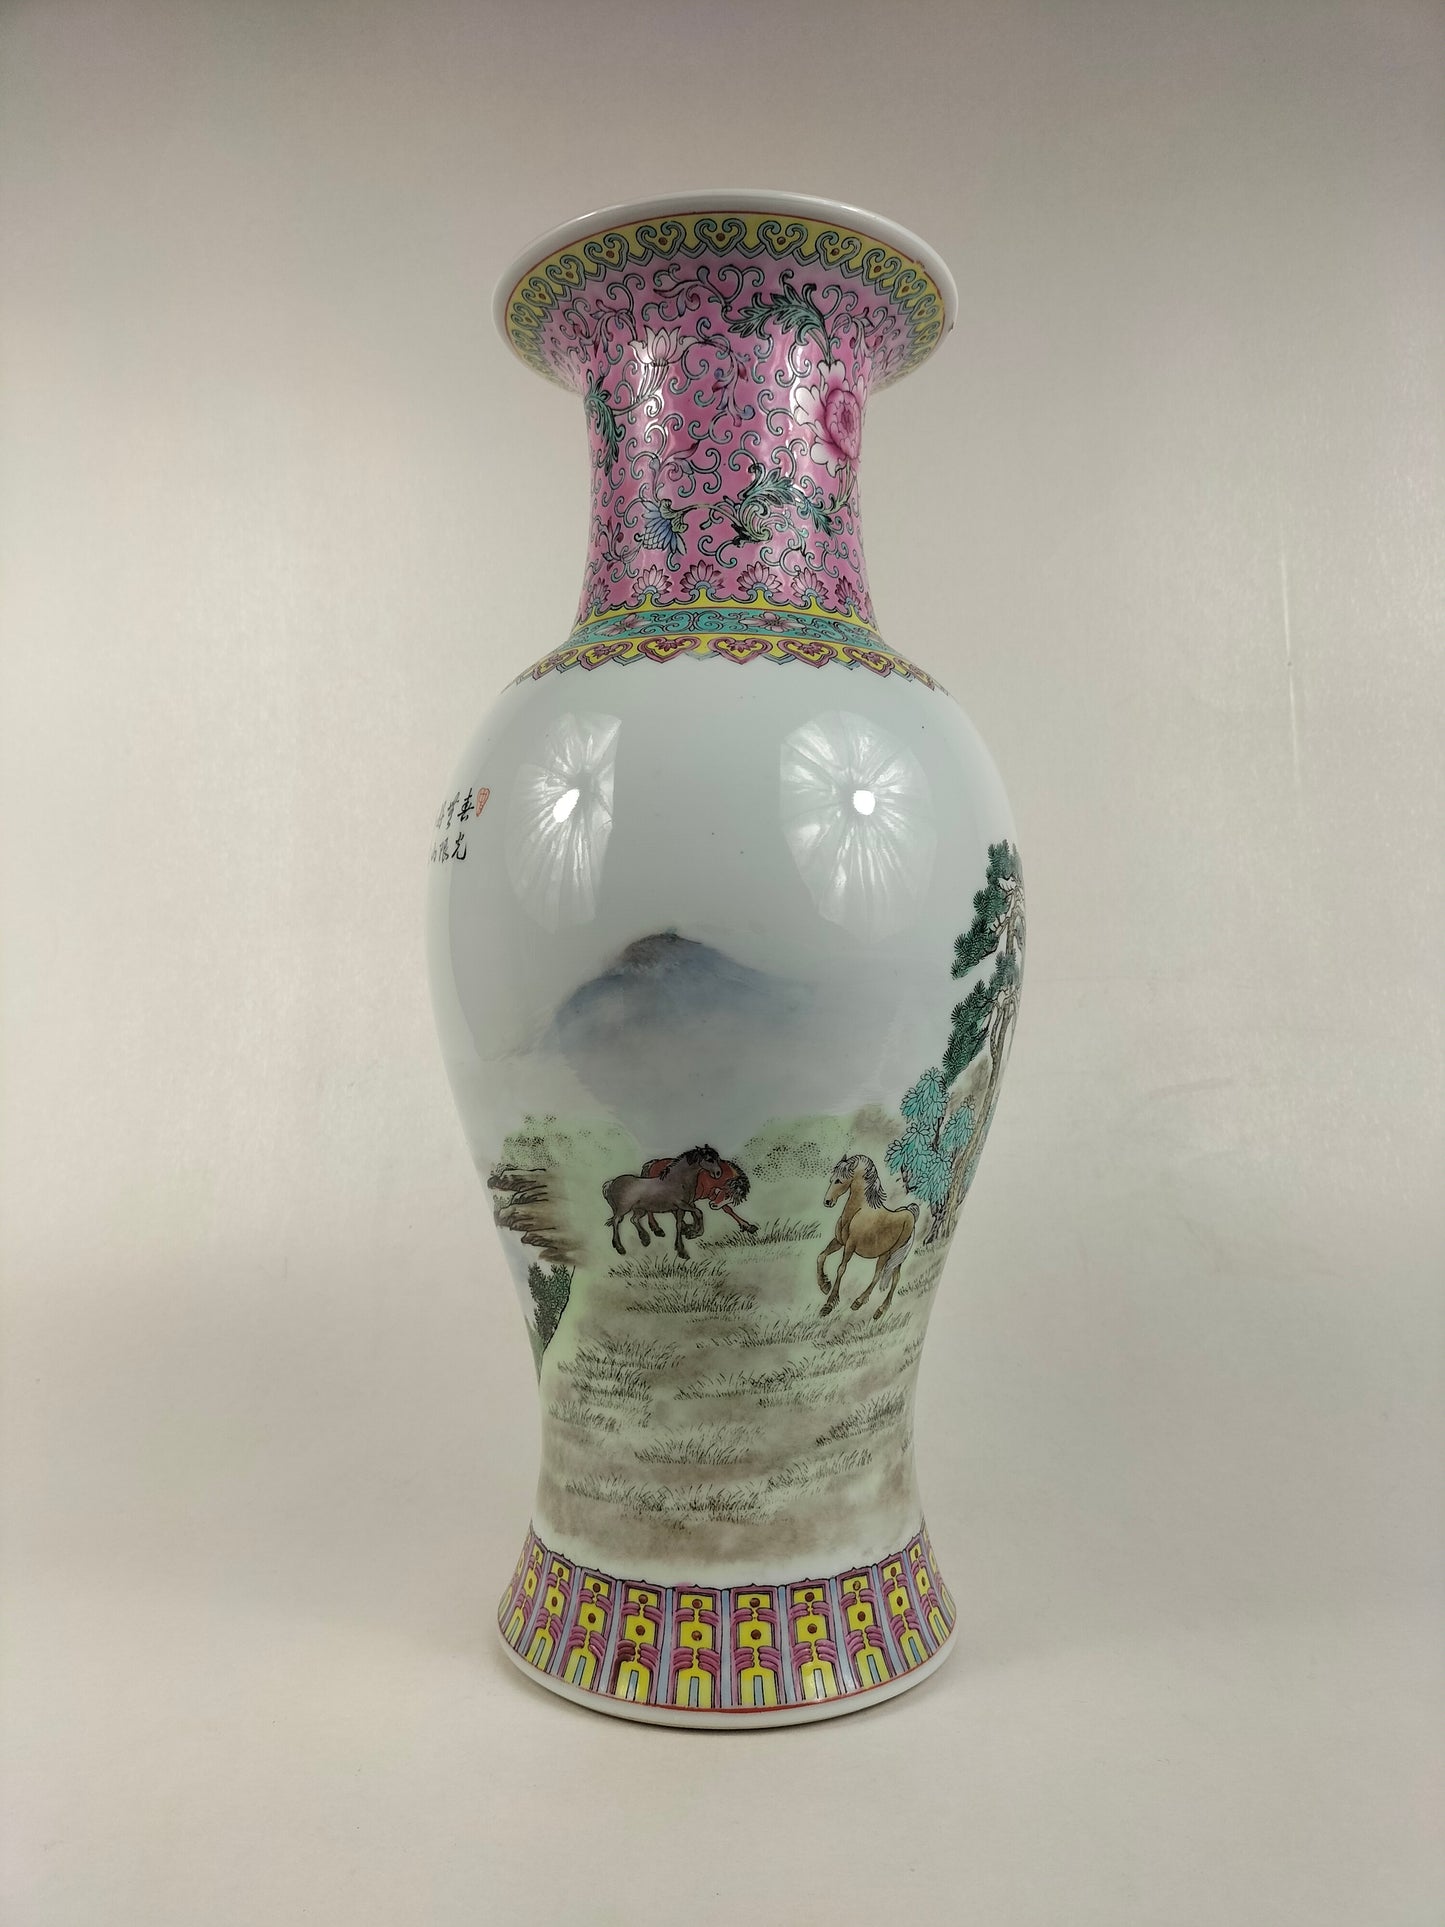 Bình hoa hồng gia đình Trung Quốc được trang trí hình ngựa // Jingdezhen - thế kỷ 20